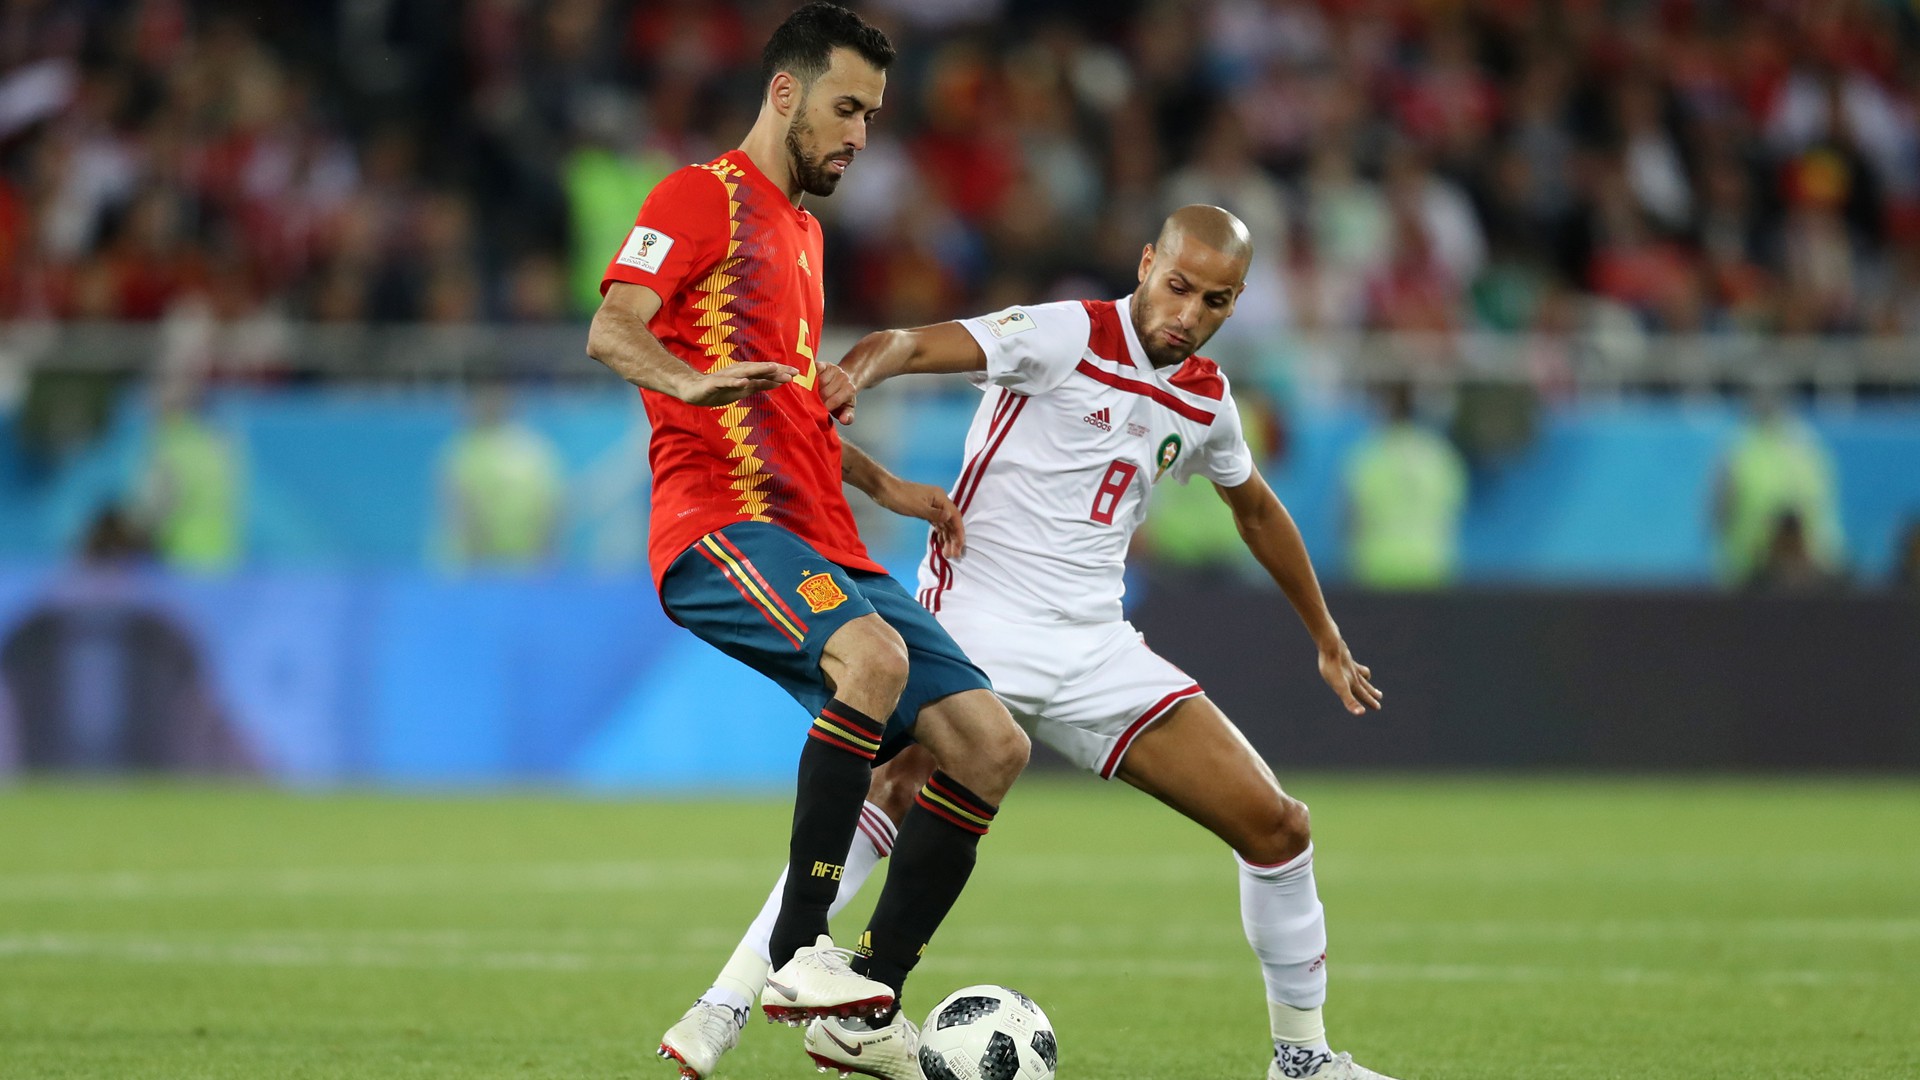 Chờ đợi gì ở Tây Ban Nha sau thất bại tại World Cup 2018? - Ảnh 2.